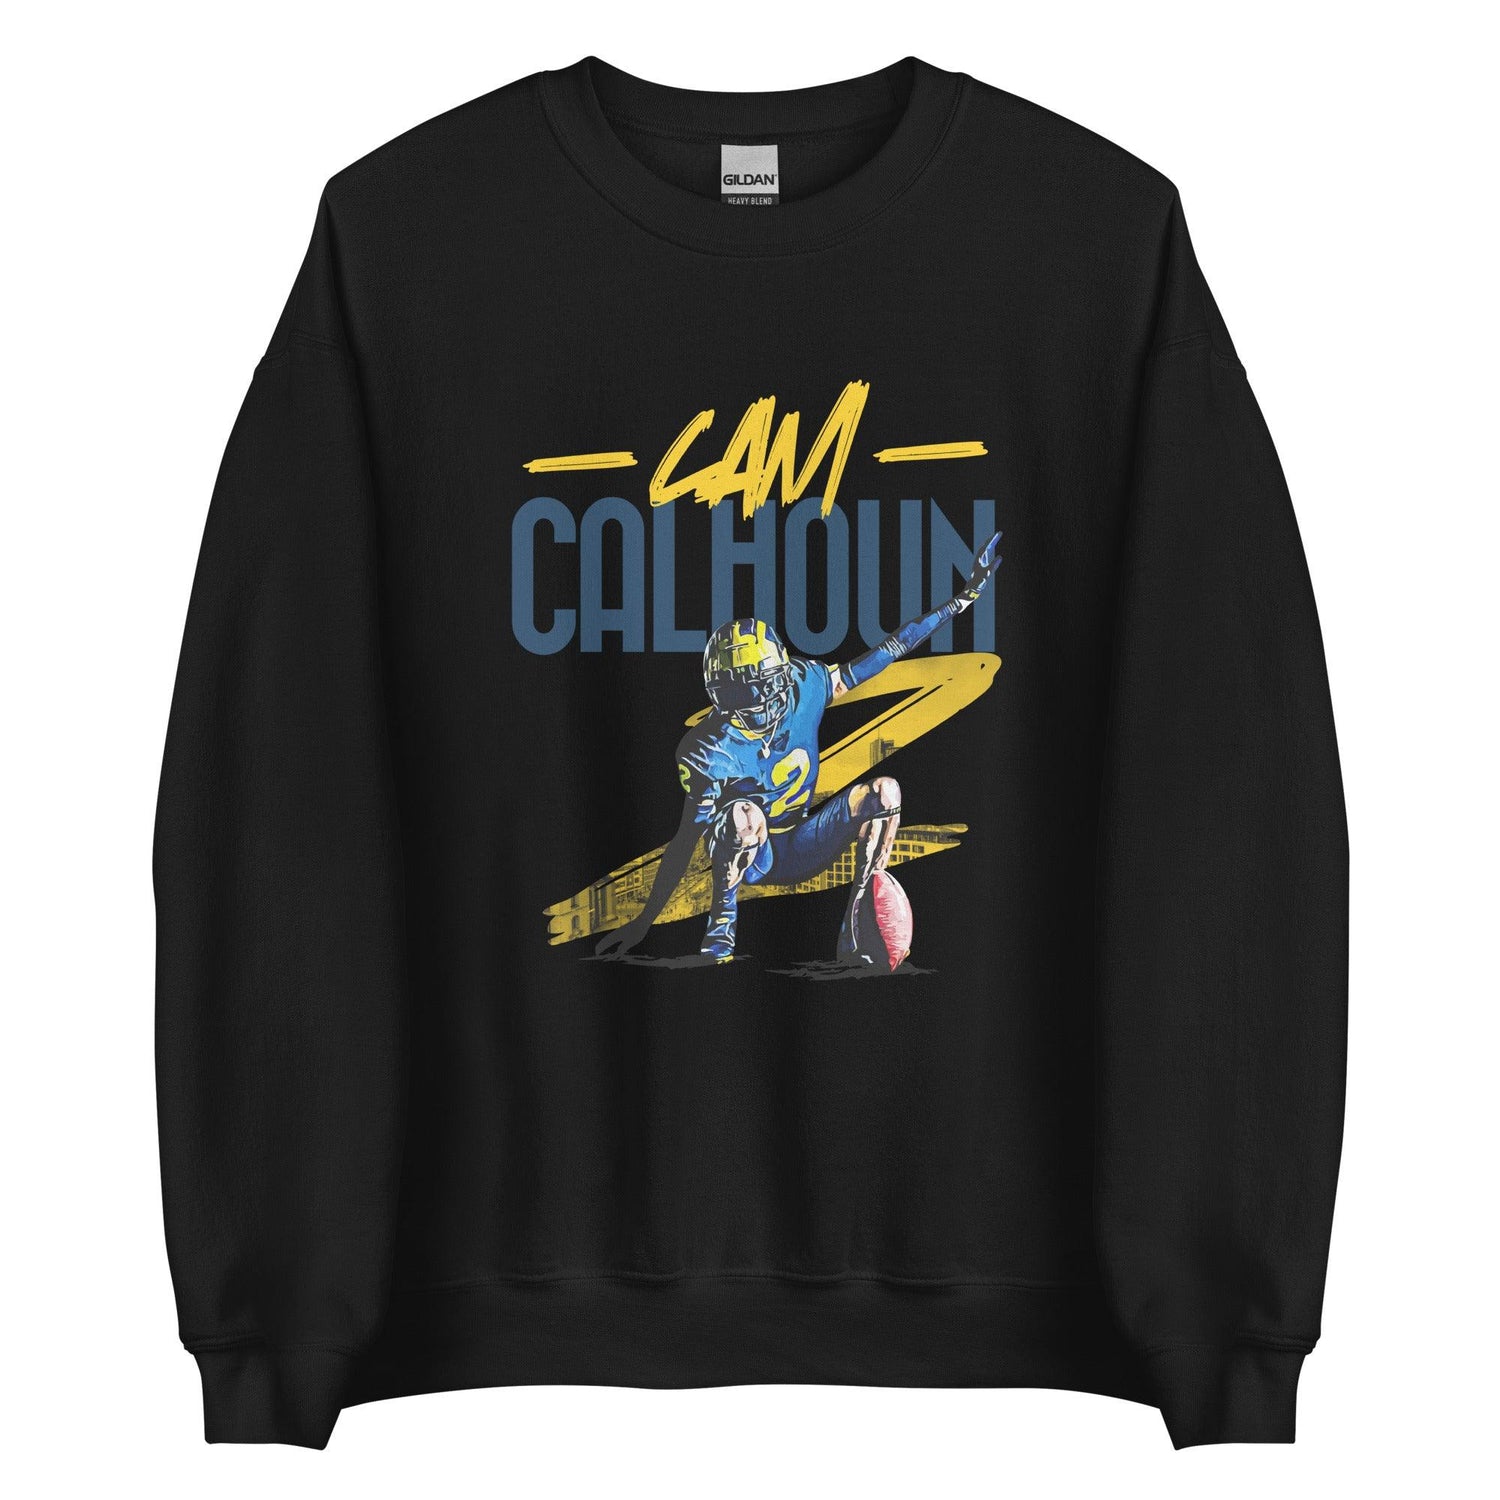 Cameron Calhoun "Gameday" Sweatshirt - Fan Arch